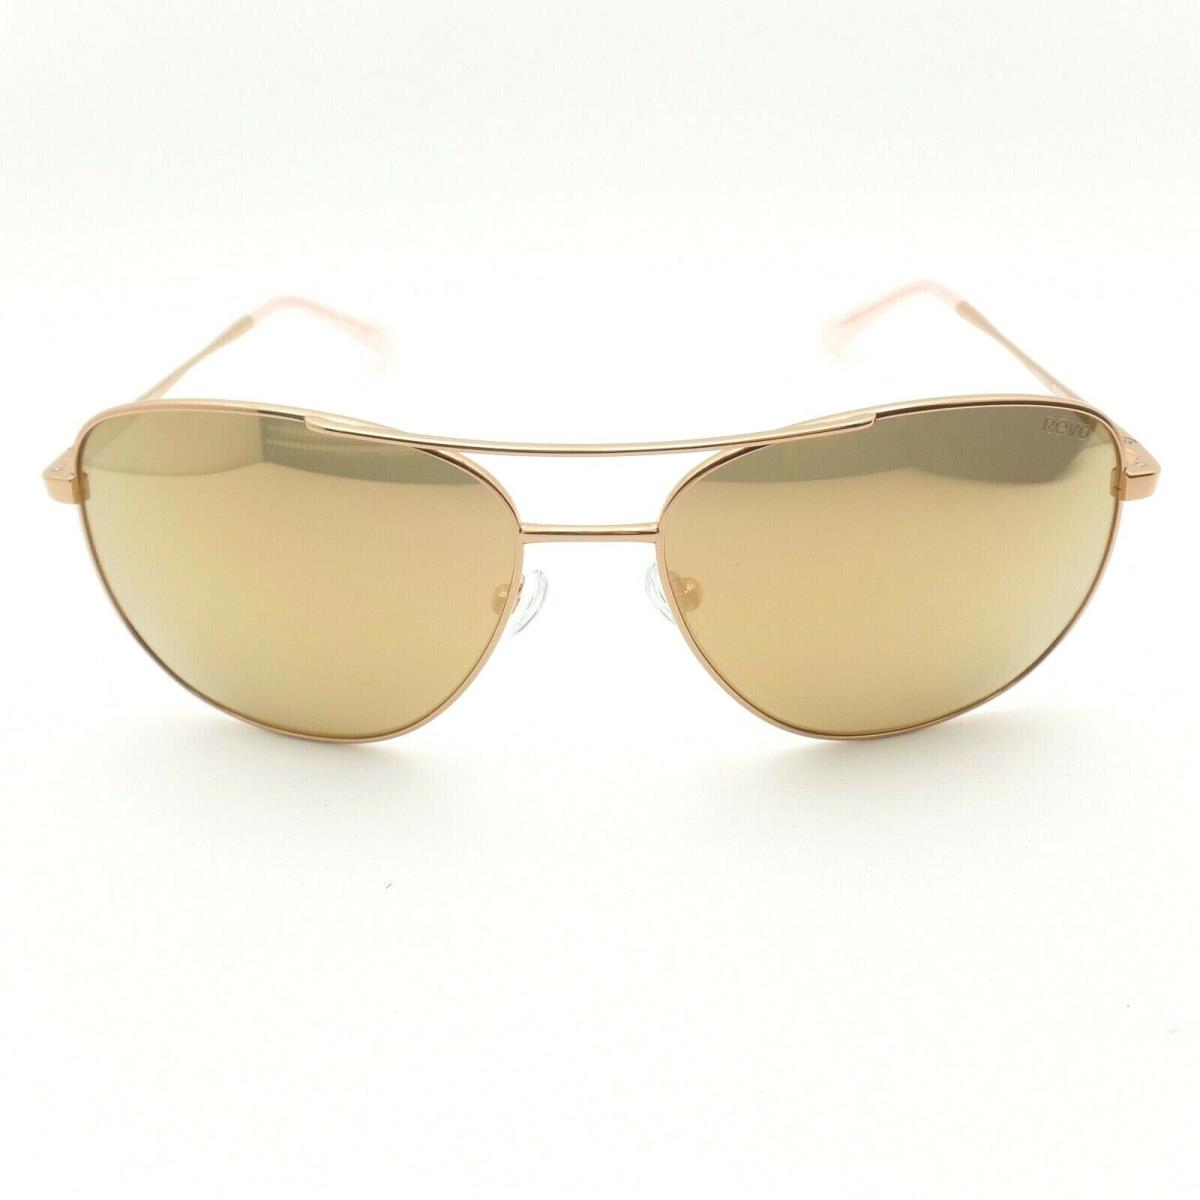 Revo sunglasses  - Rose Gold Frame, Champagne Lens